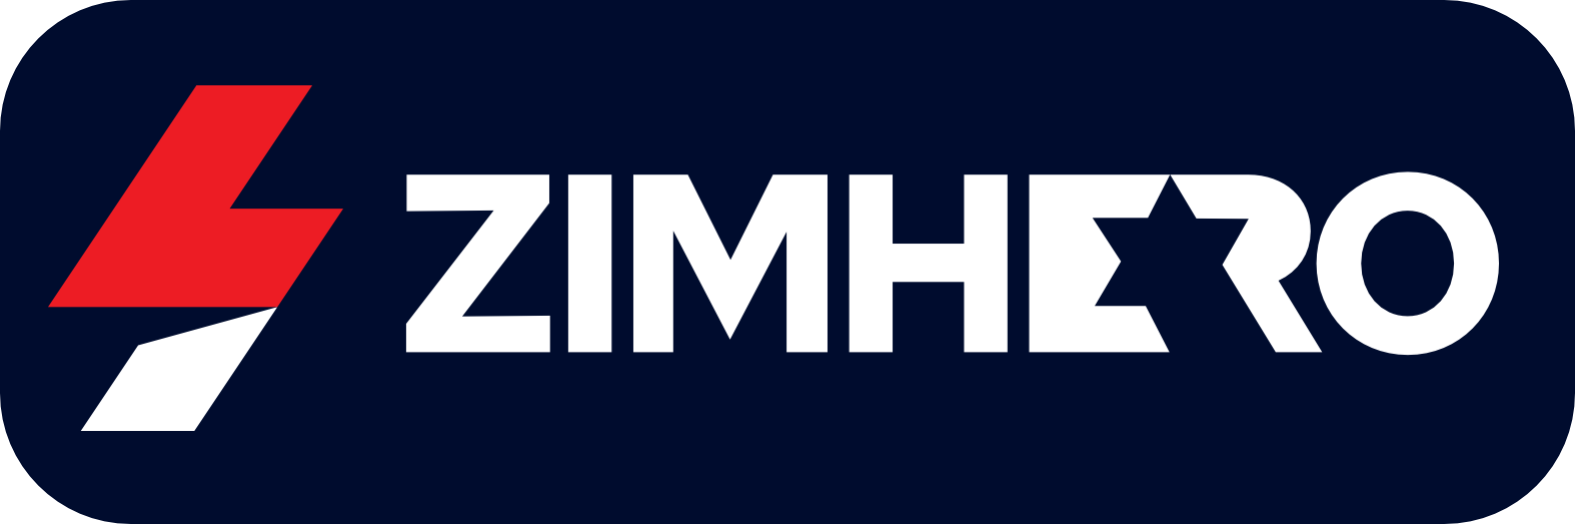 Zimhero